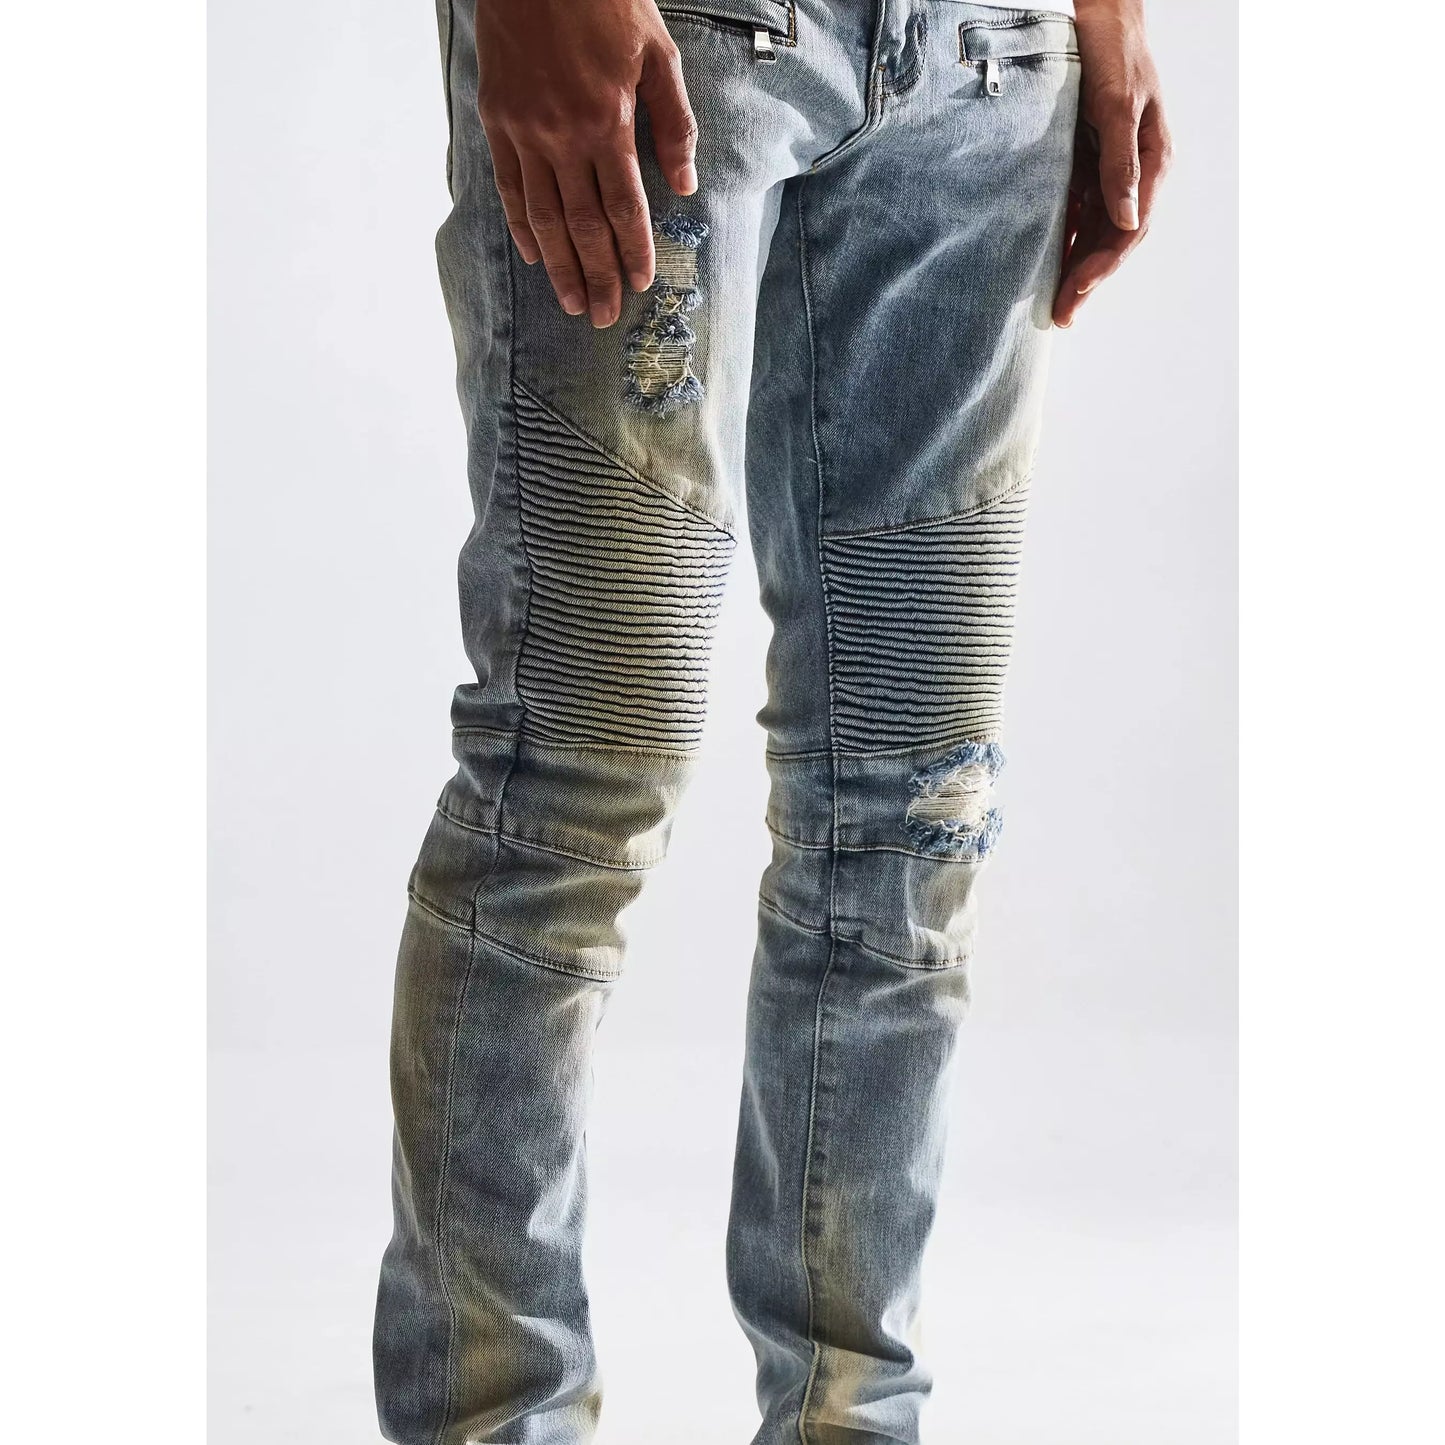 Embellish Jason Biker Light Blue Wash Denim Jeans (EMBSP122-115)